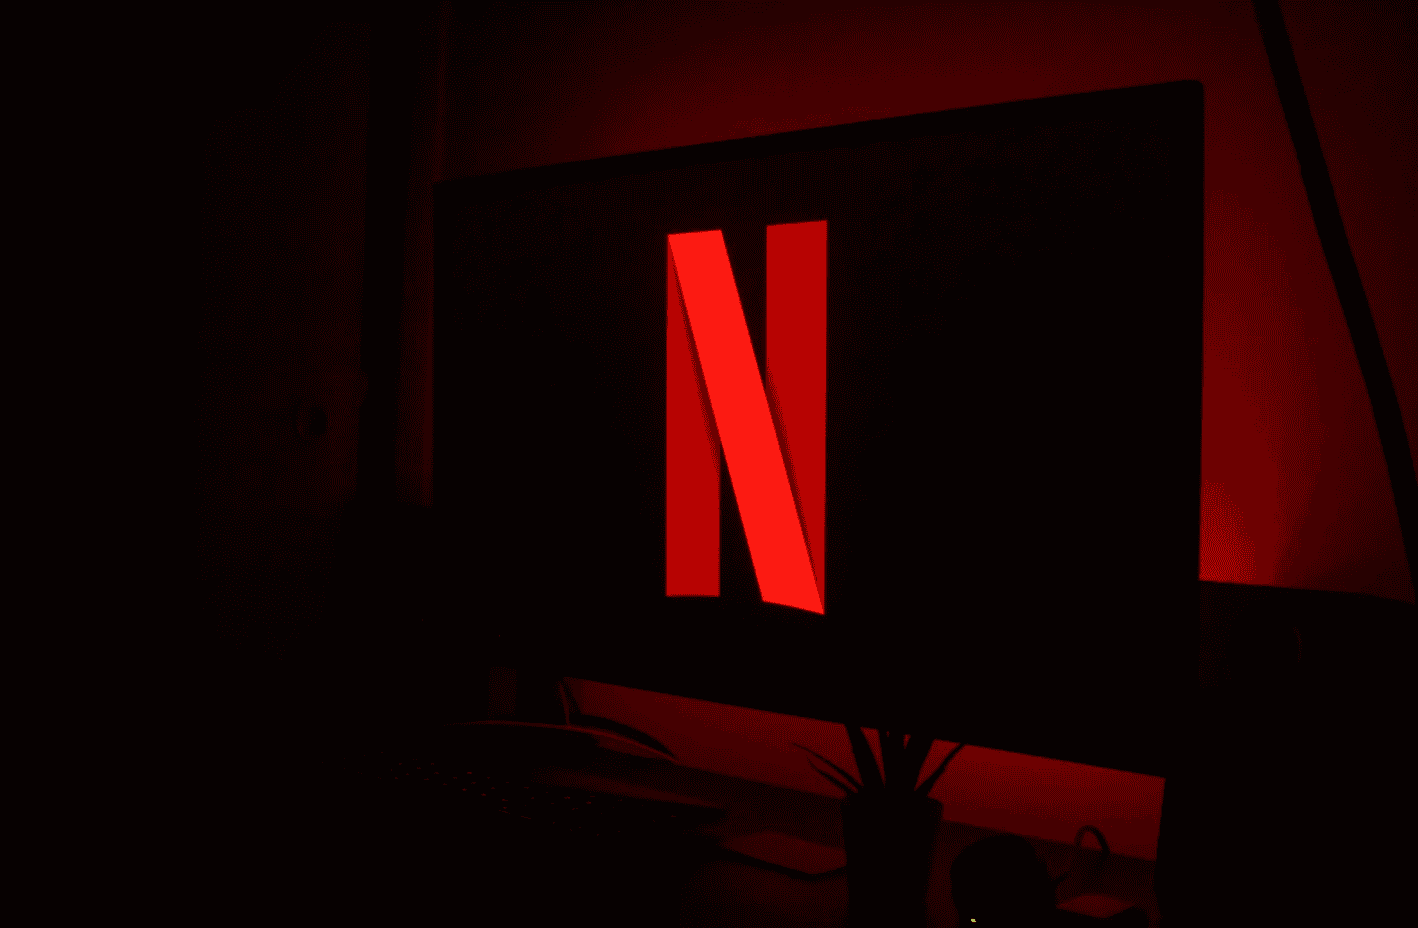 Netflix: Co-CEO comenta sobre expectativas a respeito da taxa de  compartilhamento de senhas – ANMTV